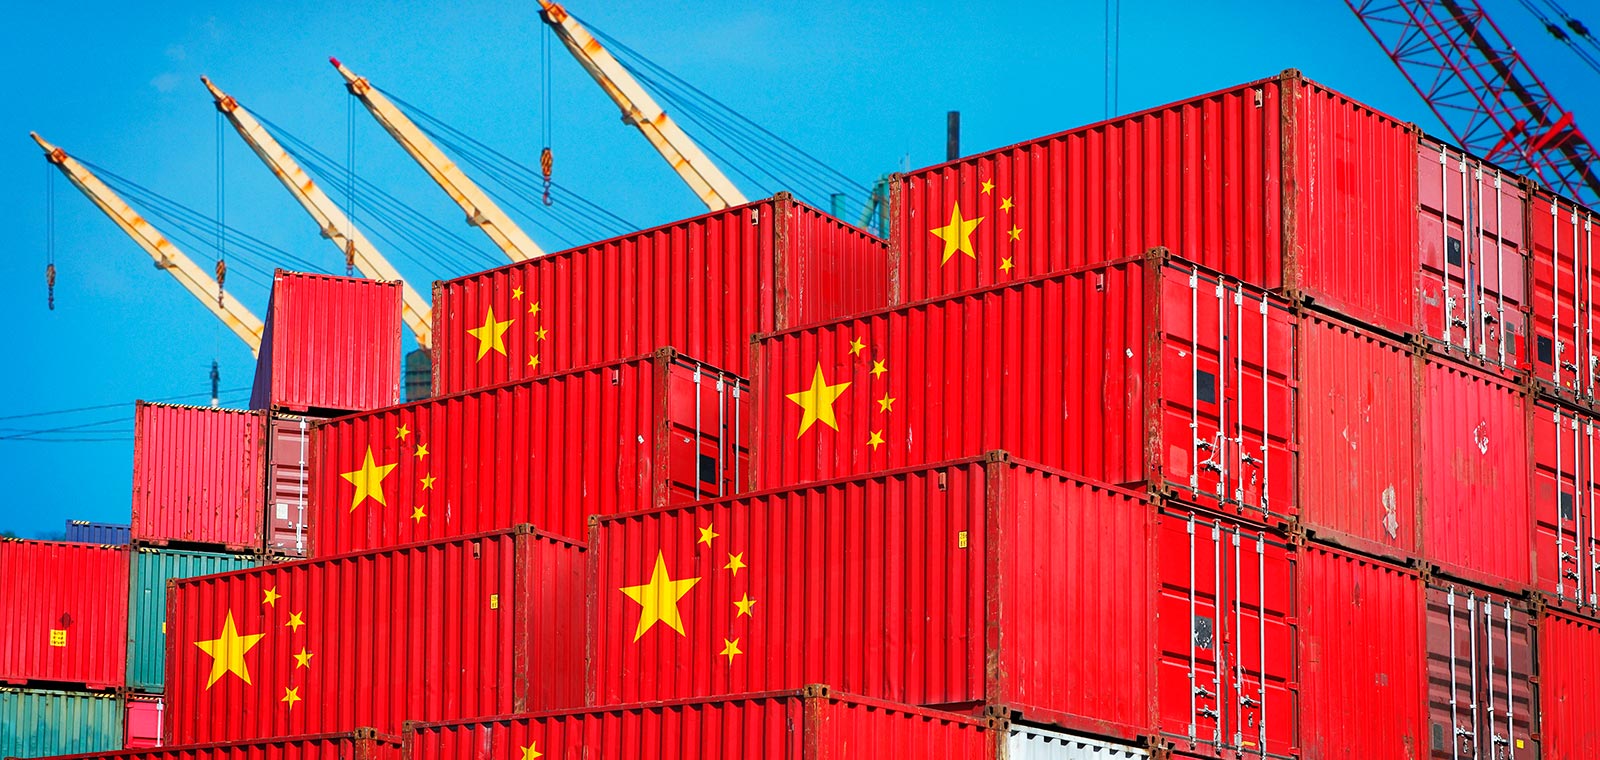 चीनको आर्थिक सुधार योजनाः वैदेशिक व्यापार र लगानी वृद्धि